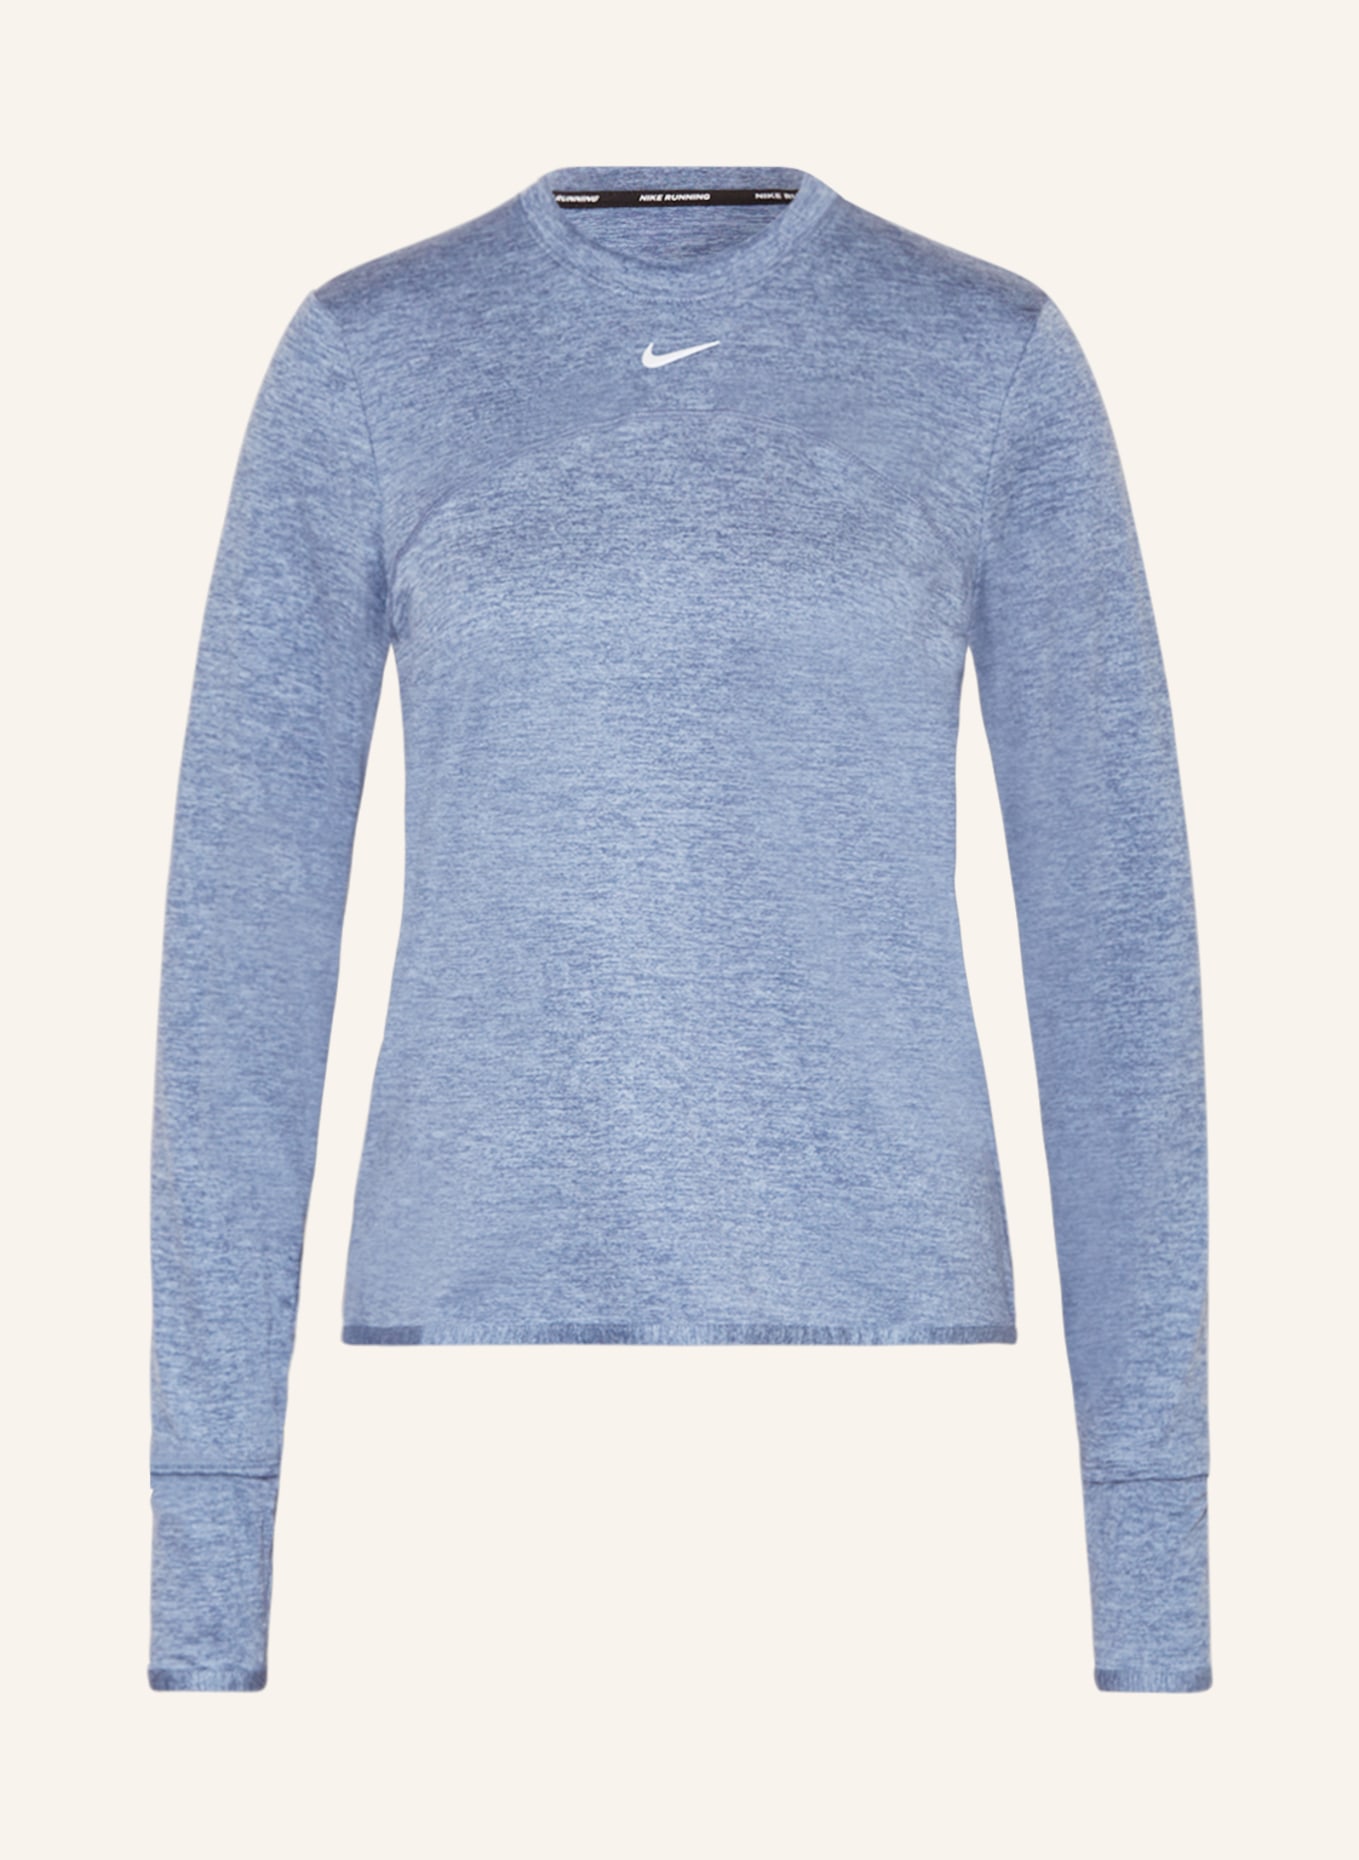 Nike Laufshirt DRI-FIT SWIFT ELEMENT UV, Farbe: HELLBLAU (Bild 1)